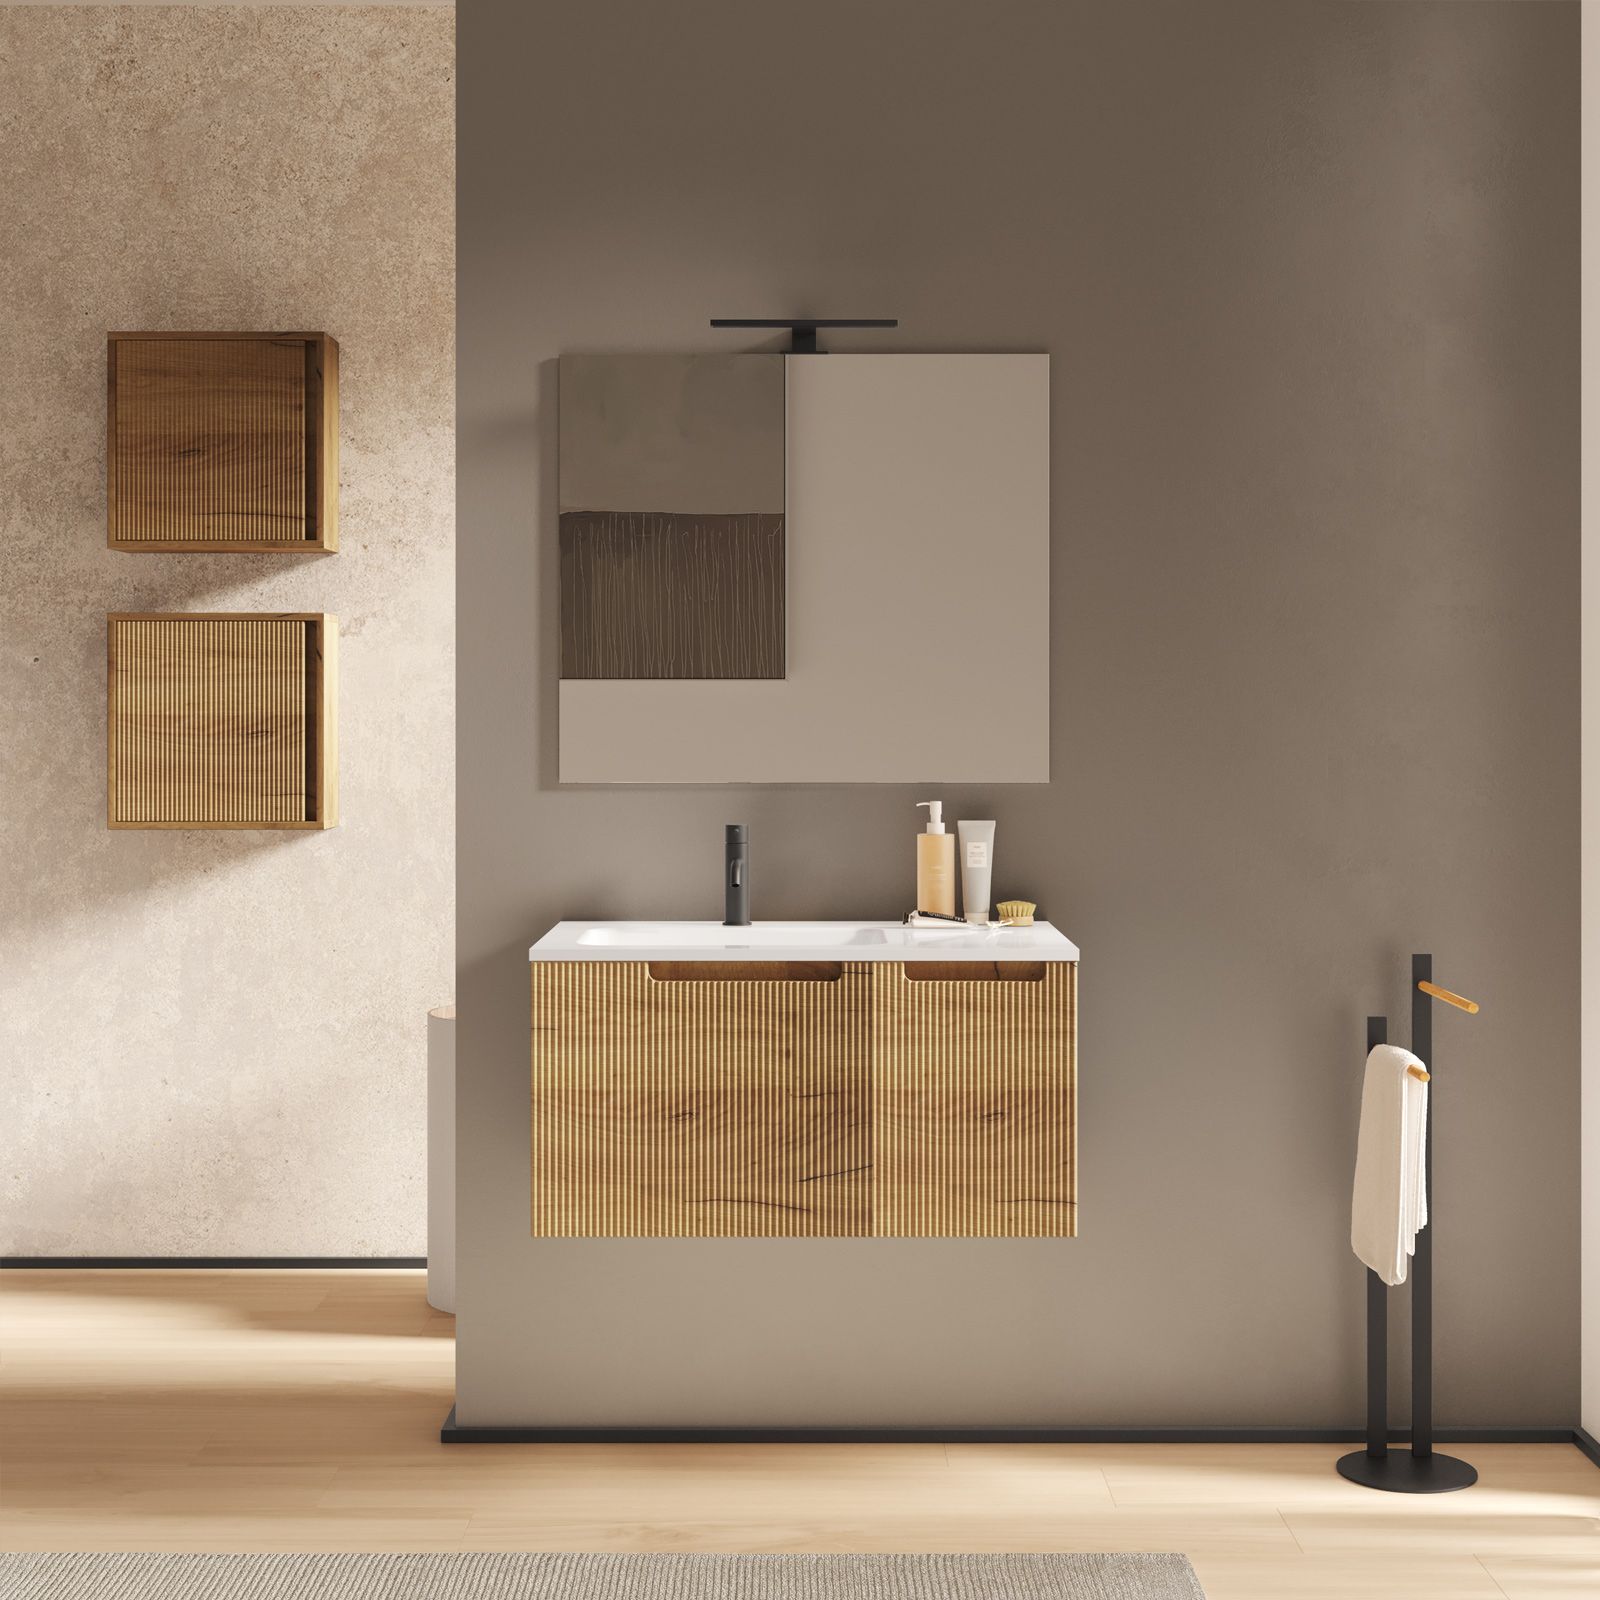 Bagno Italia Mobile bagno sospeso da cm 80 colore Rovere Nordik con  lavandino specchio arredo moderno mobili in legno : : Casa e cucina